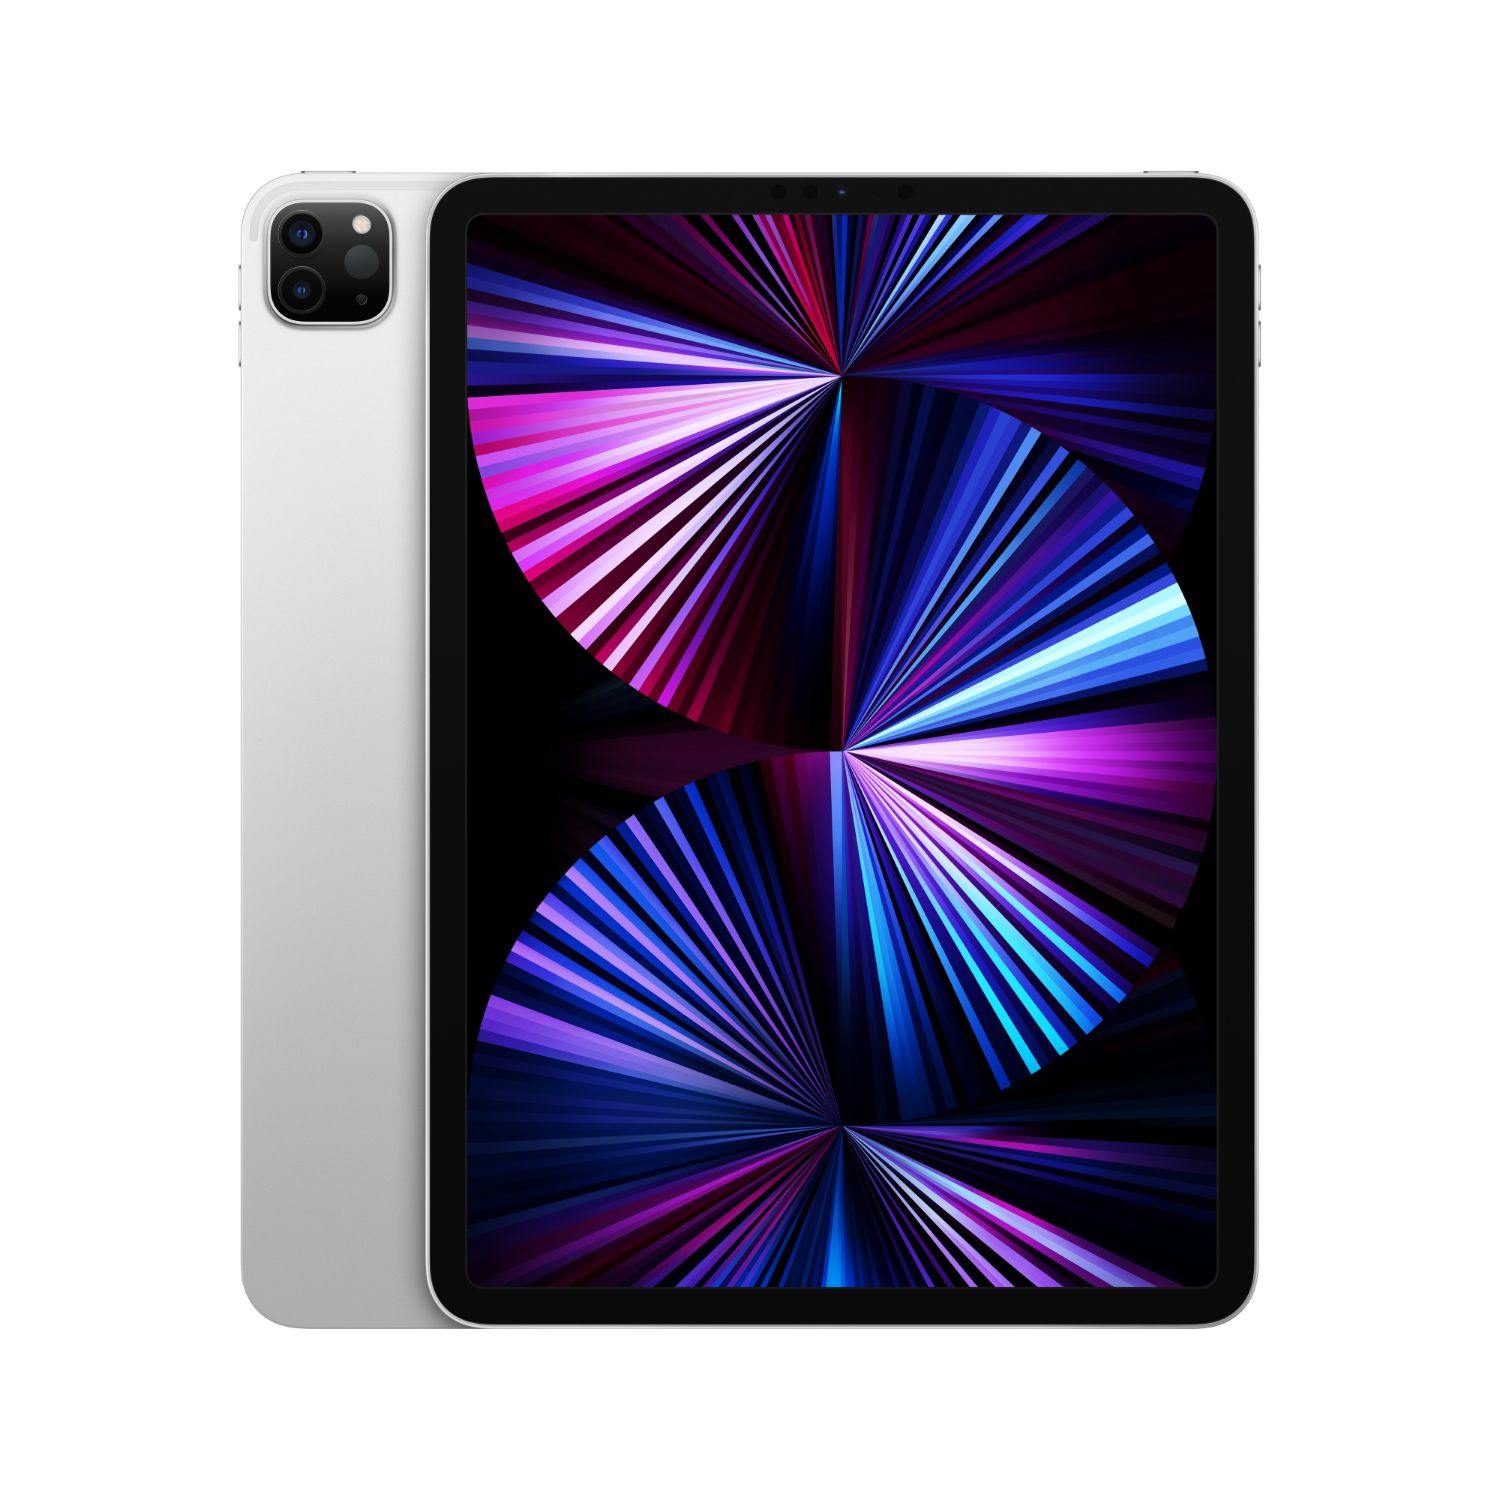 MHQX3TY/A - Apple iPad PRO 11